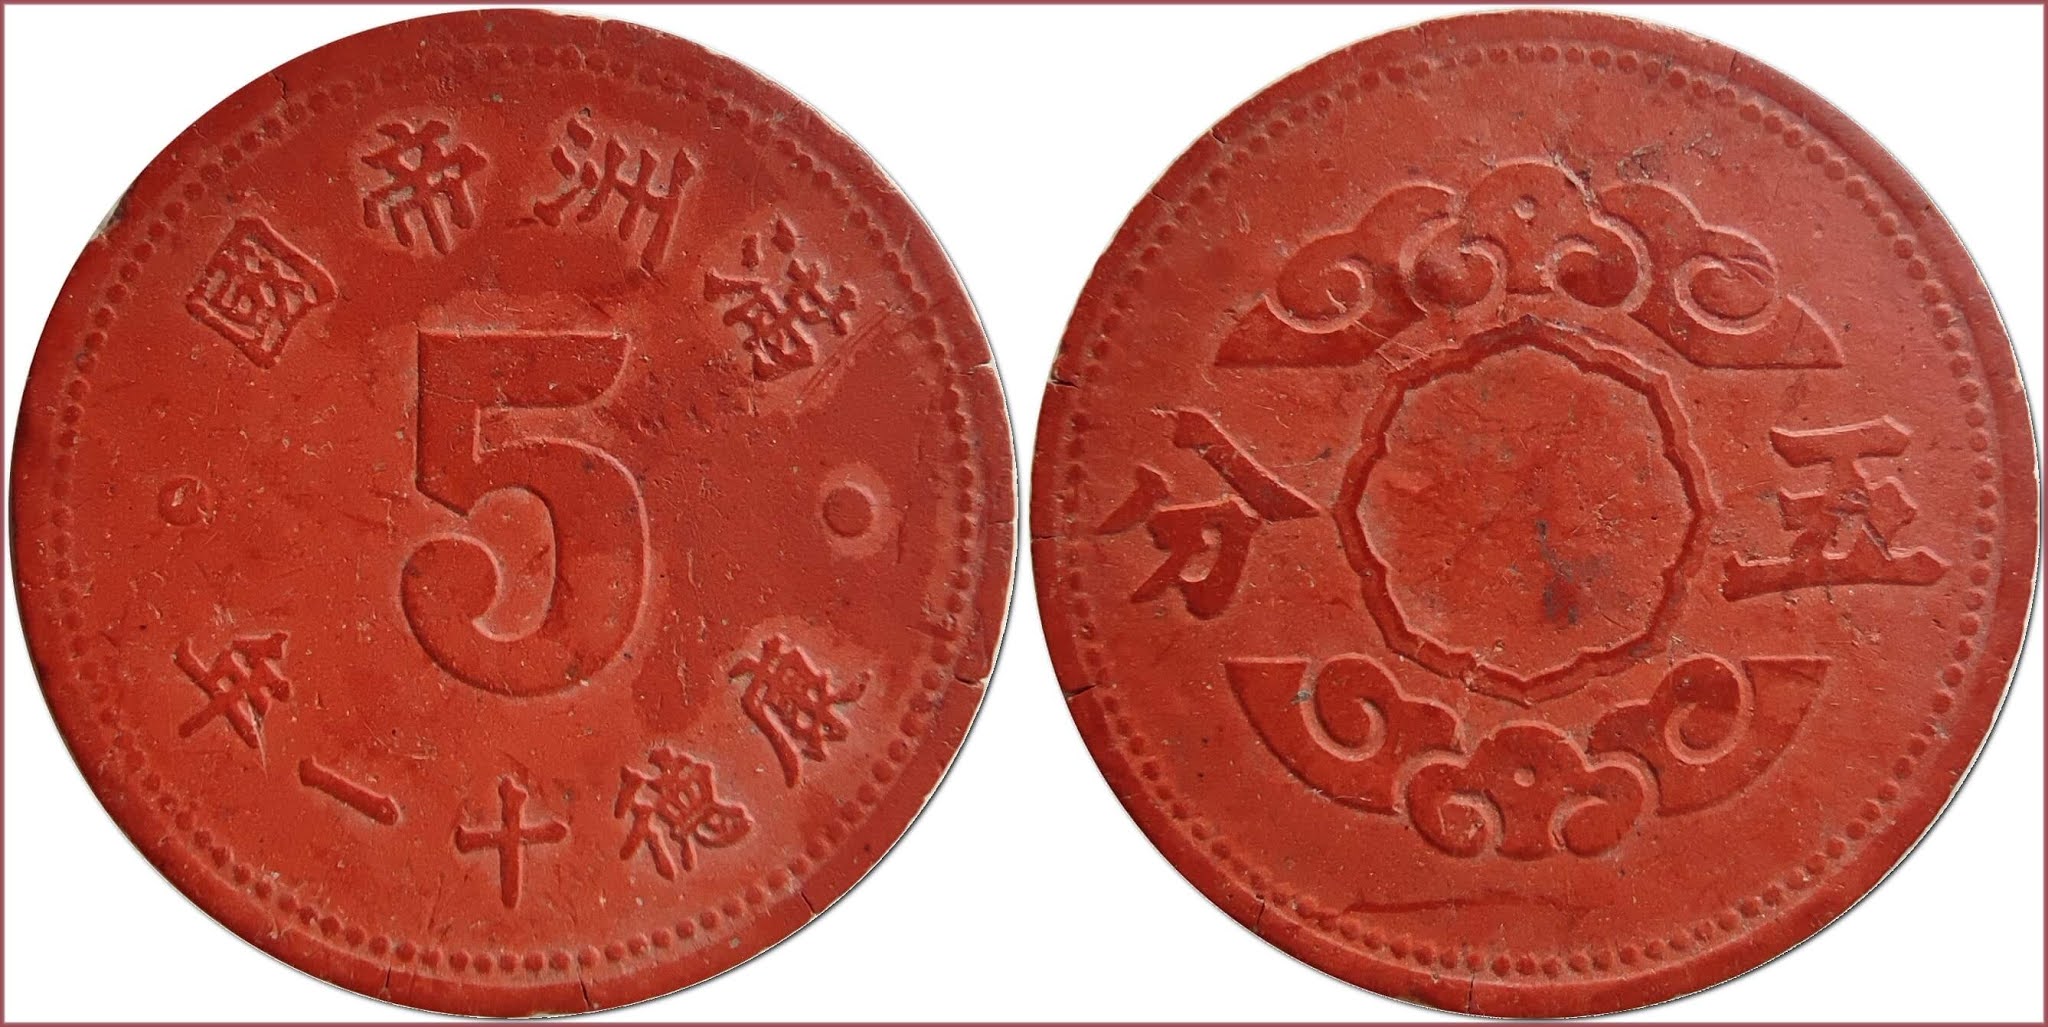 5 fen (分), 1944: Empire of Manchuria